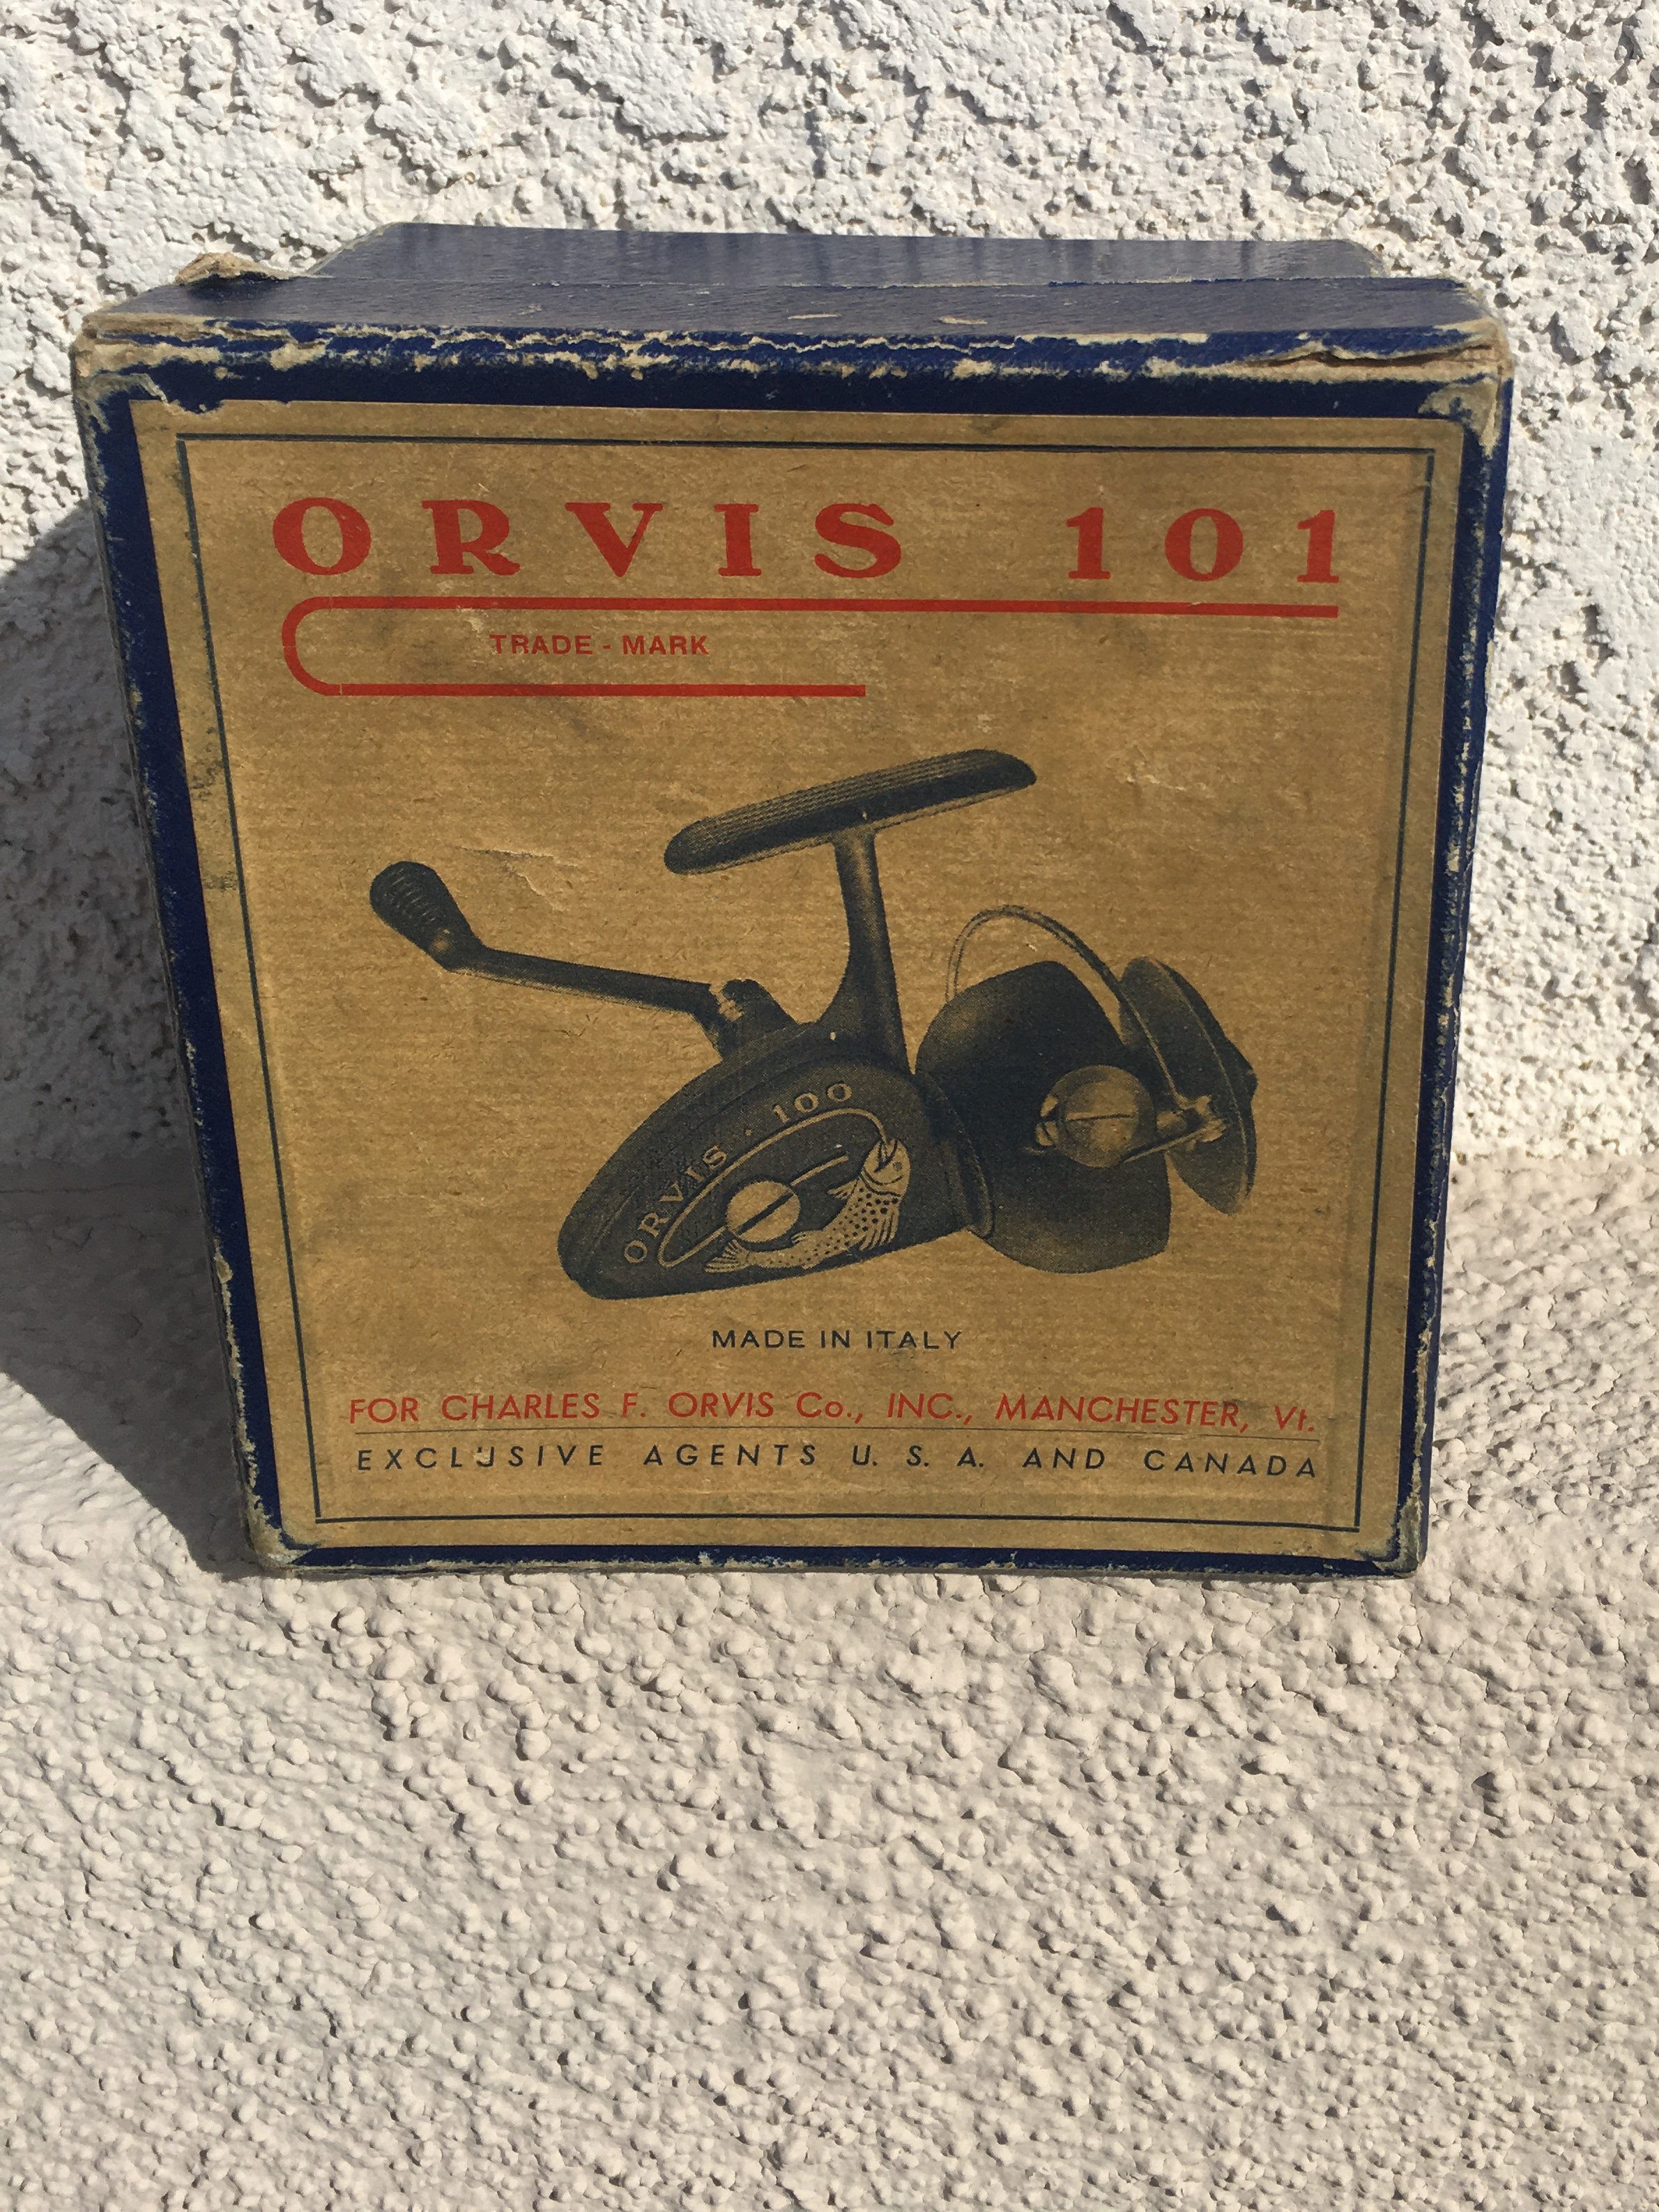 1950's Vintage Orvis 101 Spinning Reel